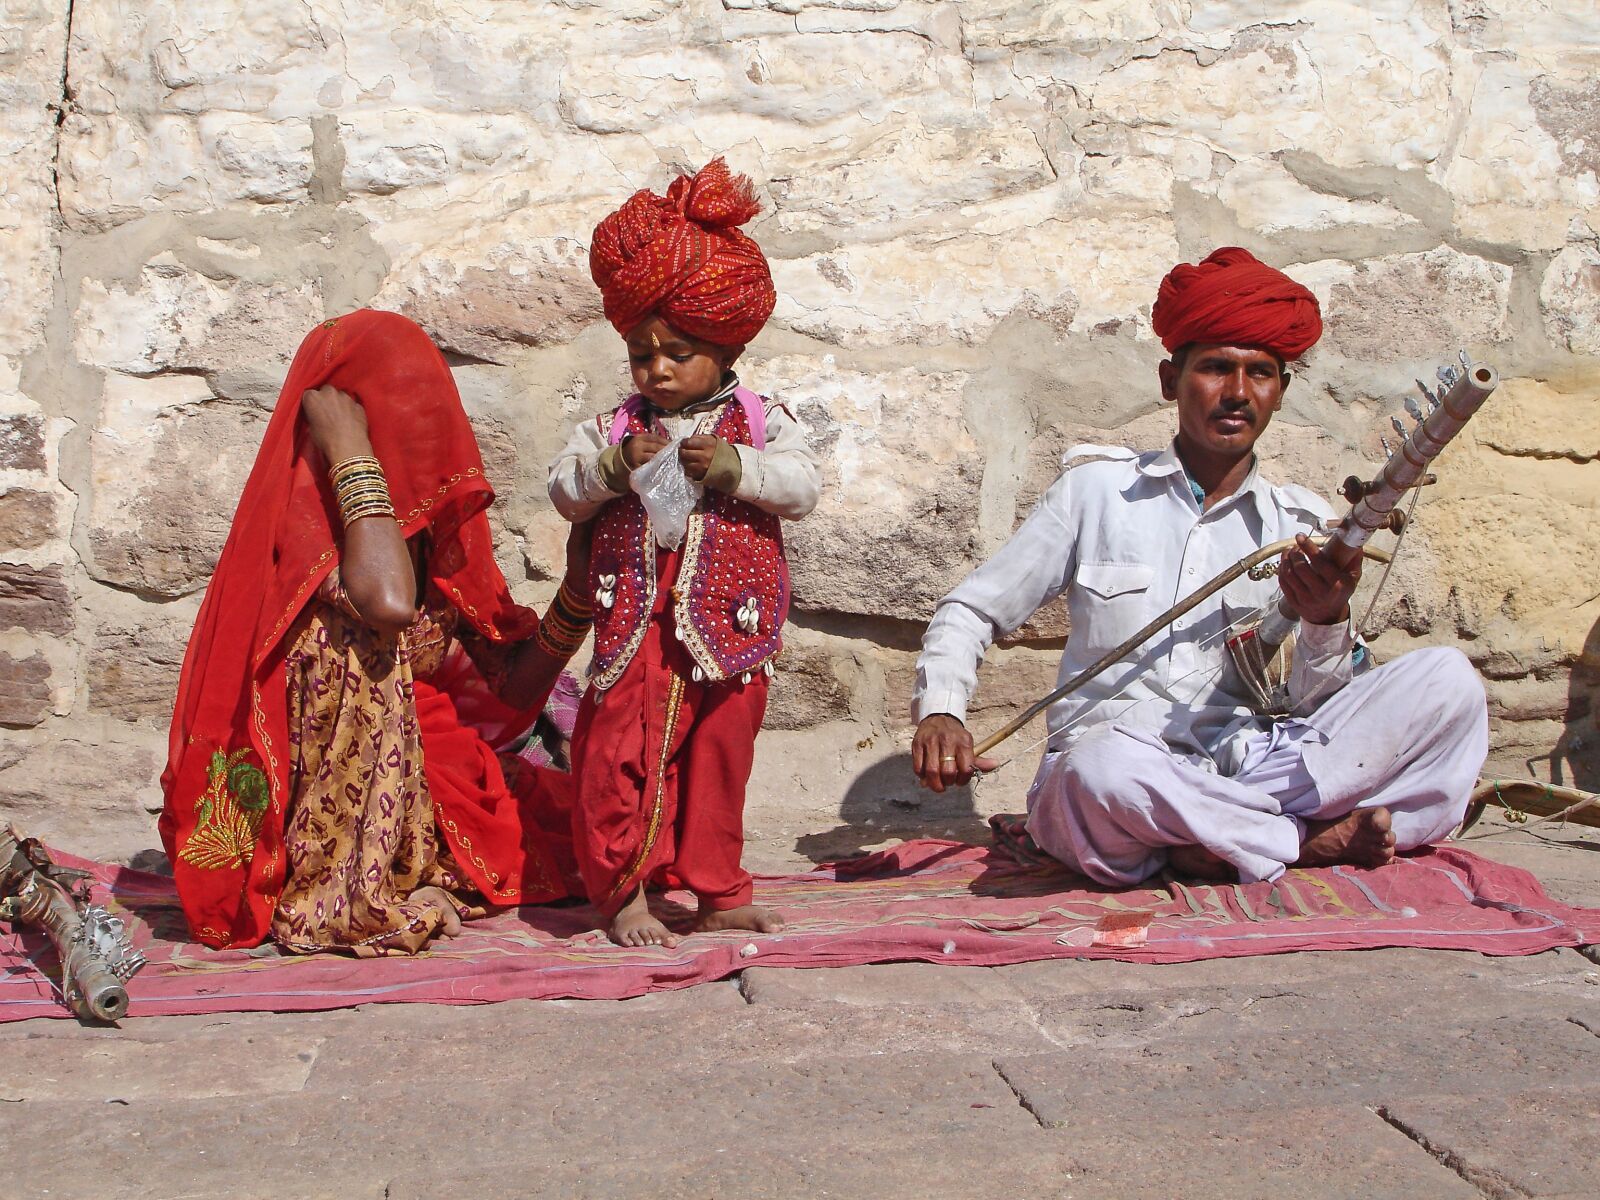 Sony DSC-P200 sample photo. India, jodhpur, family photography